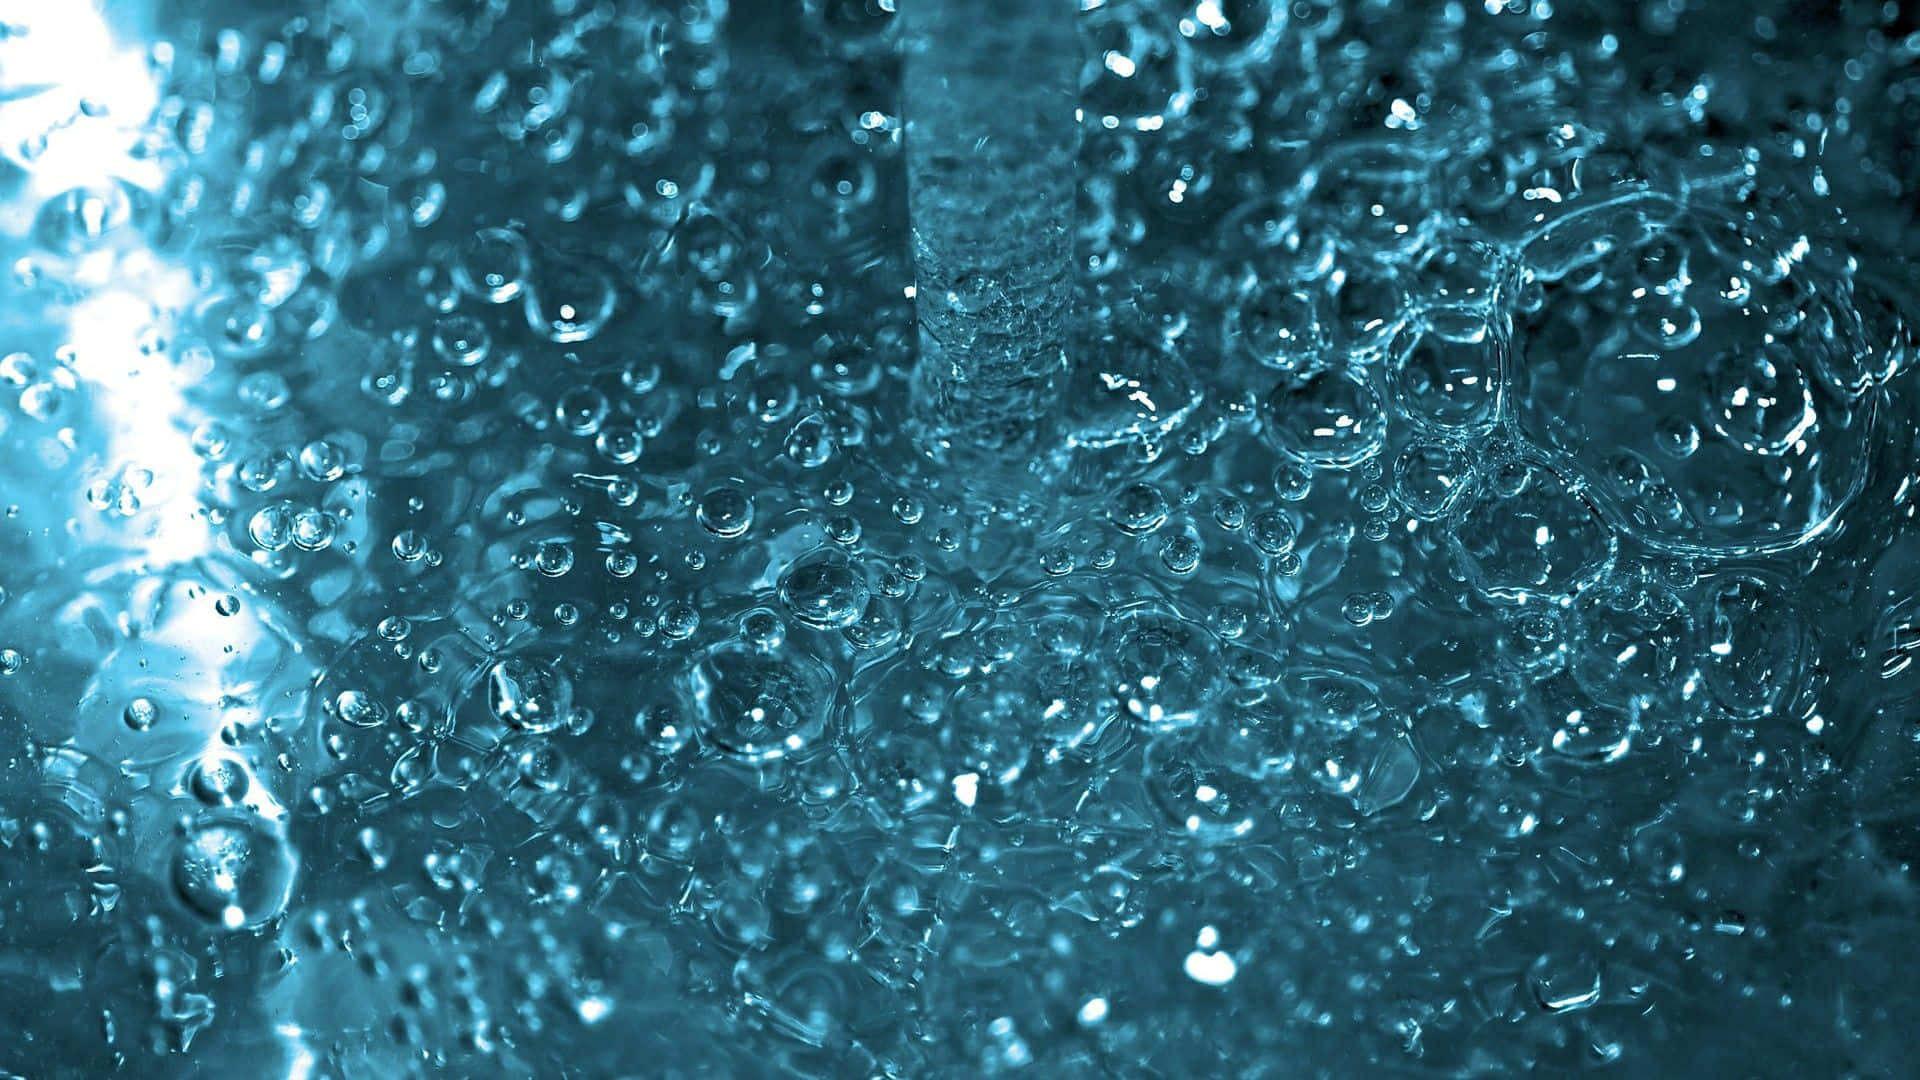 Impresionanterenderizado De Agua En 3d En Alta Definición. Fondo de pantalla